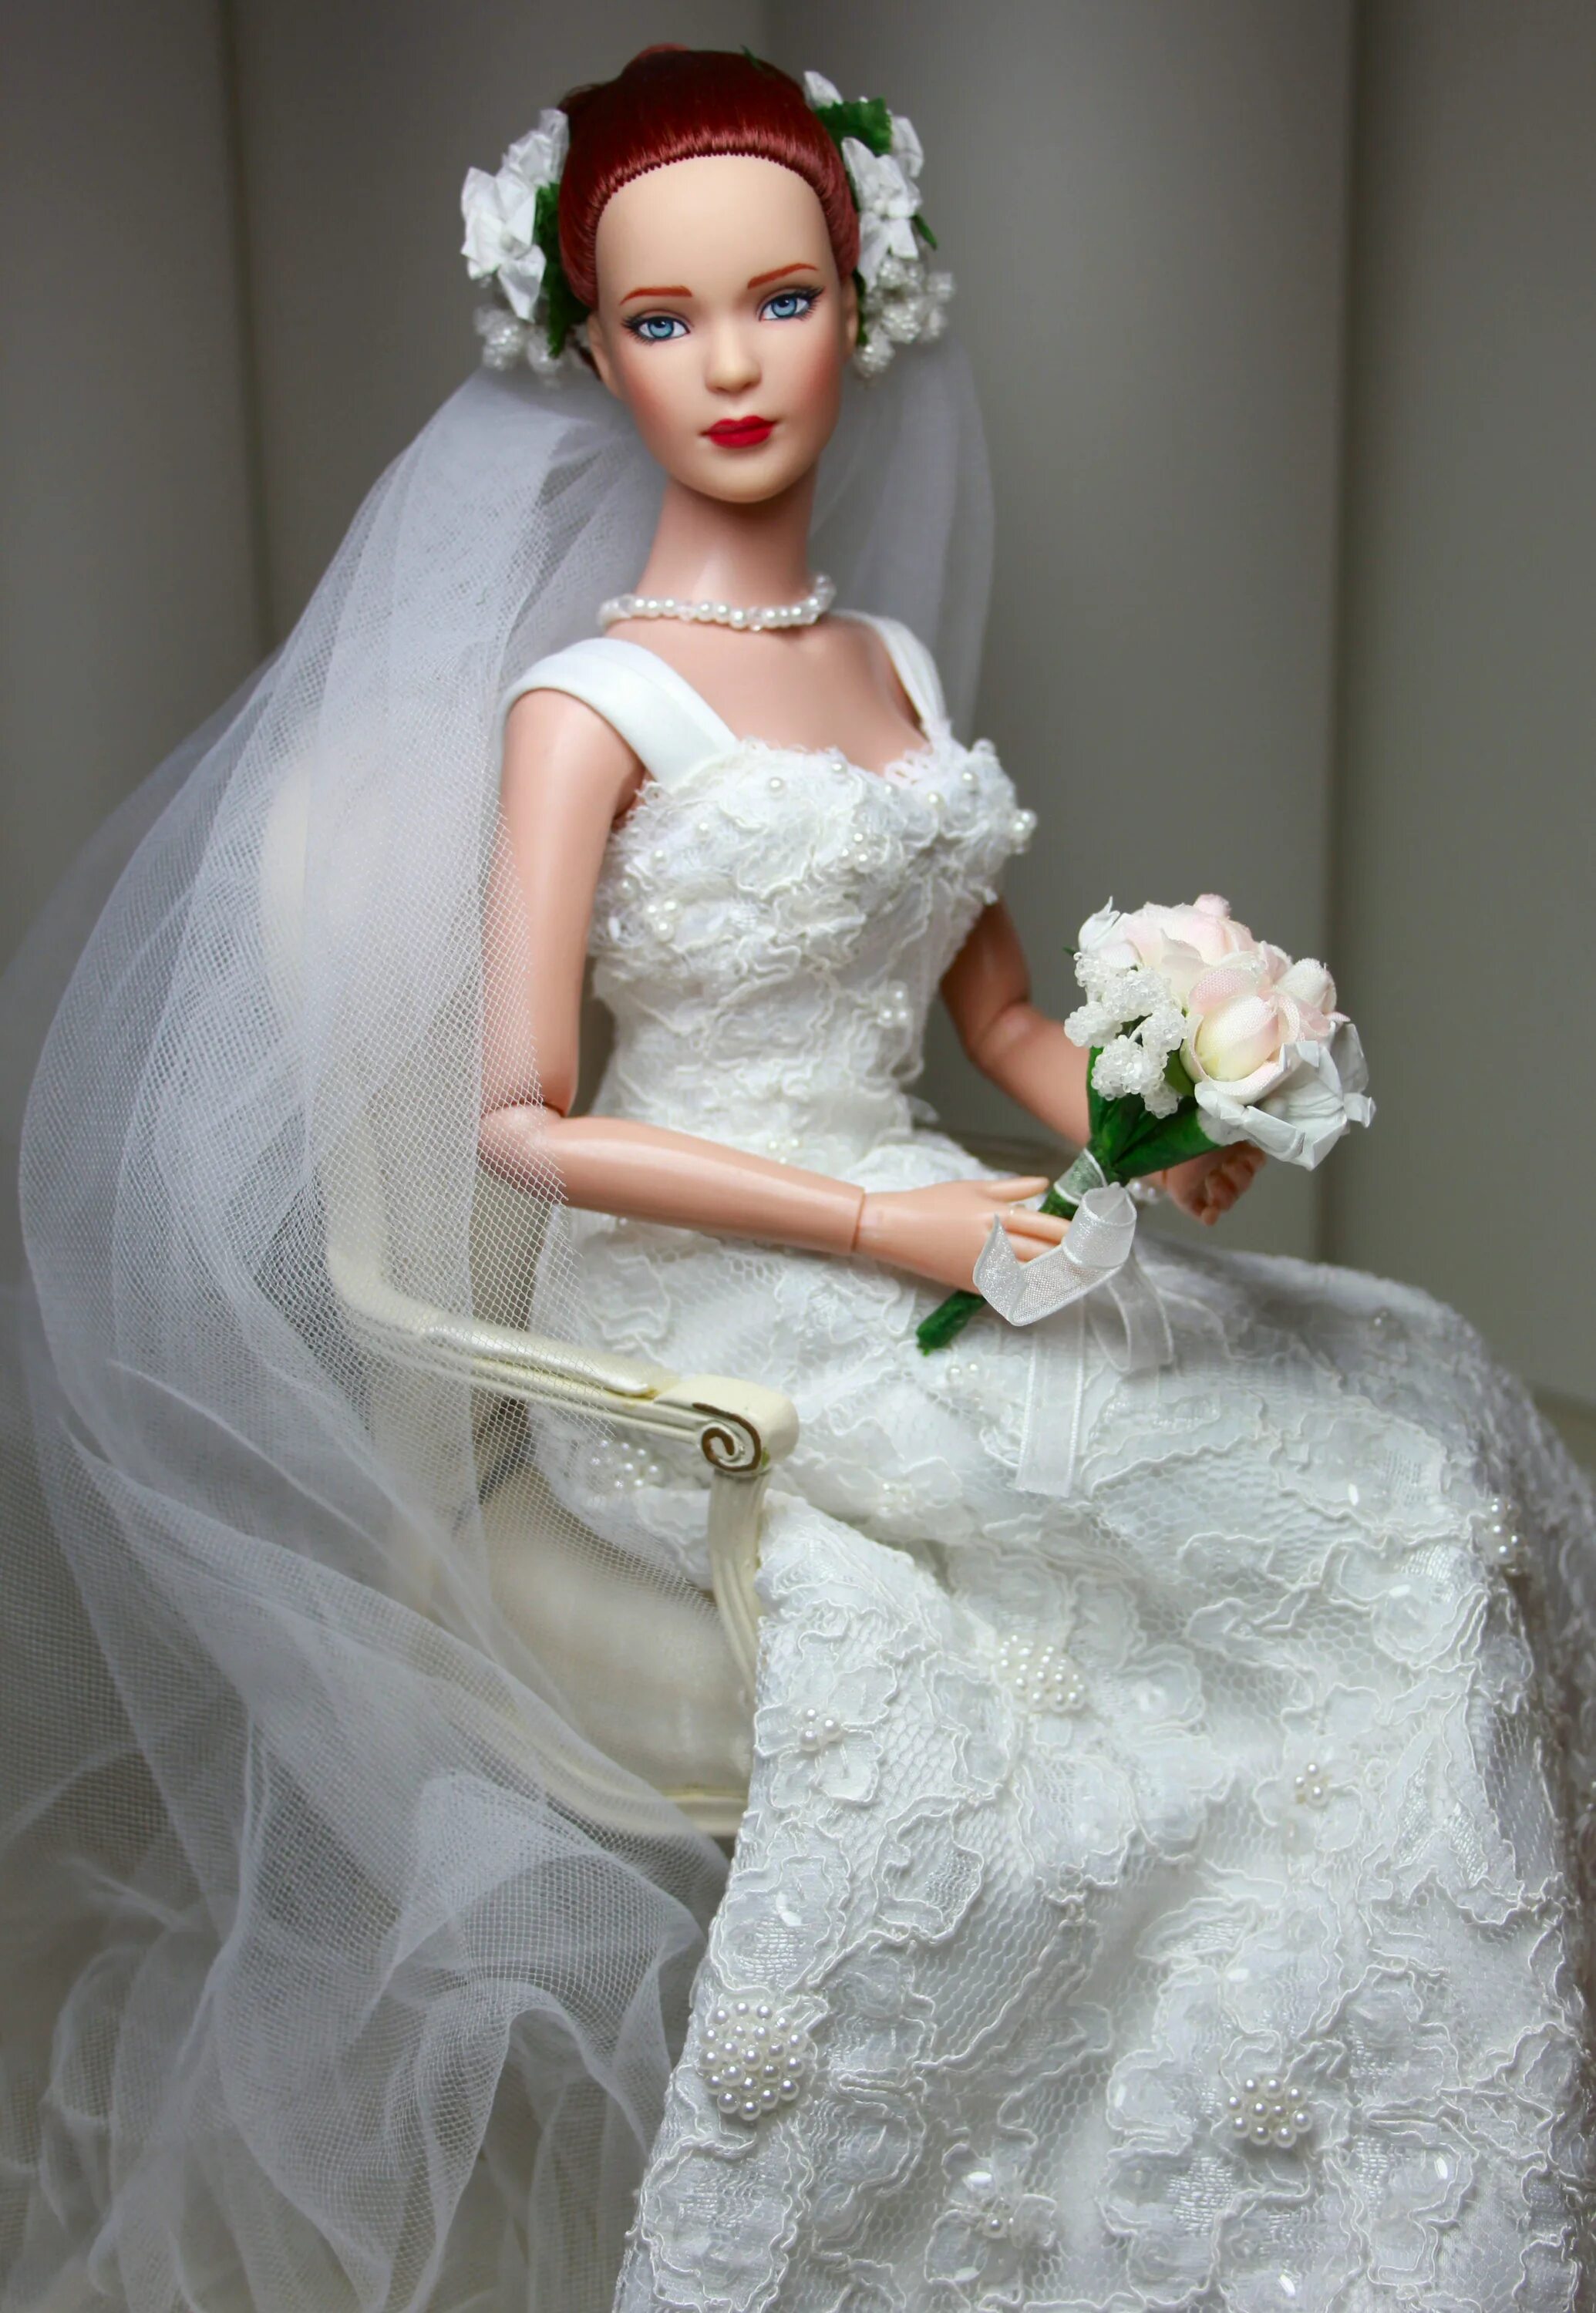 Купить куклу невесту. Куклы Tonner Tyler Wentworth. Барби невеста 2009. Барби в свадебном платье. Свадебные куклы.